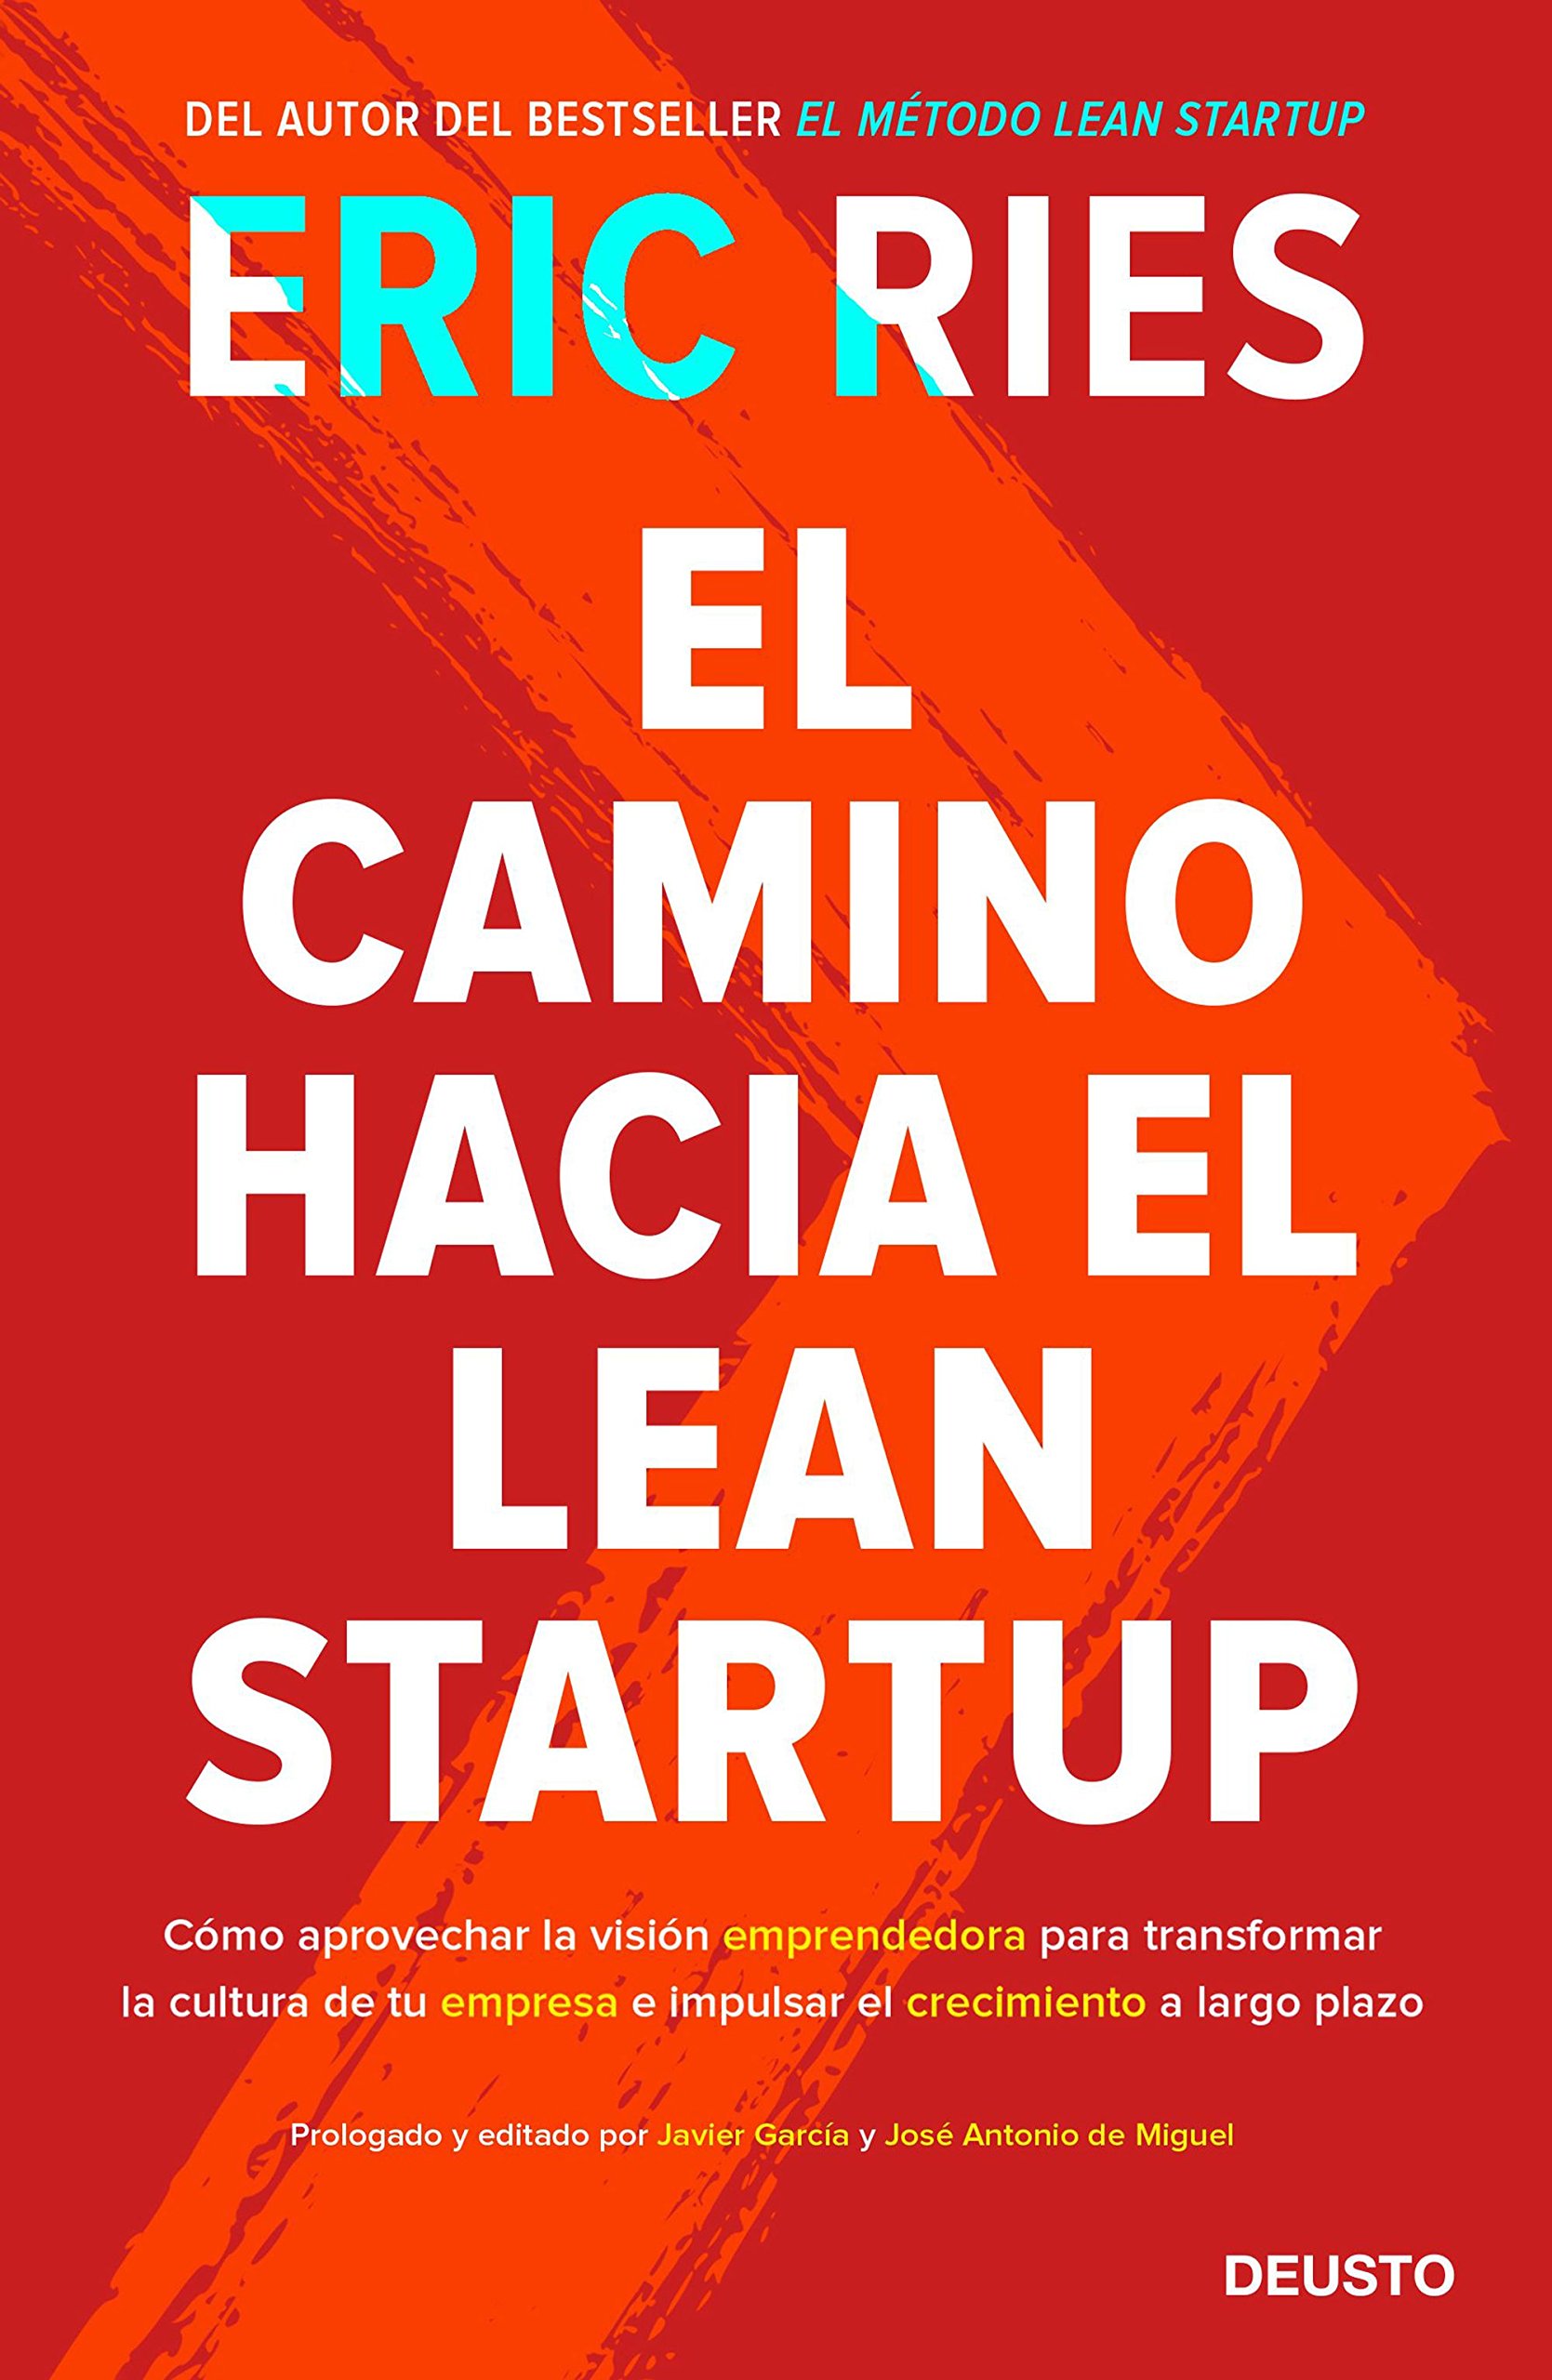 Libro "El camino hacia Lean Startup"